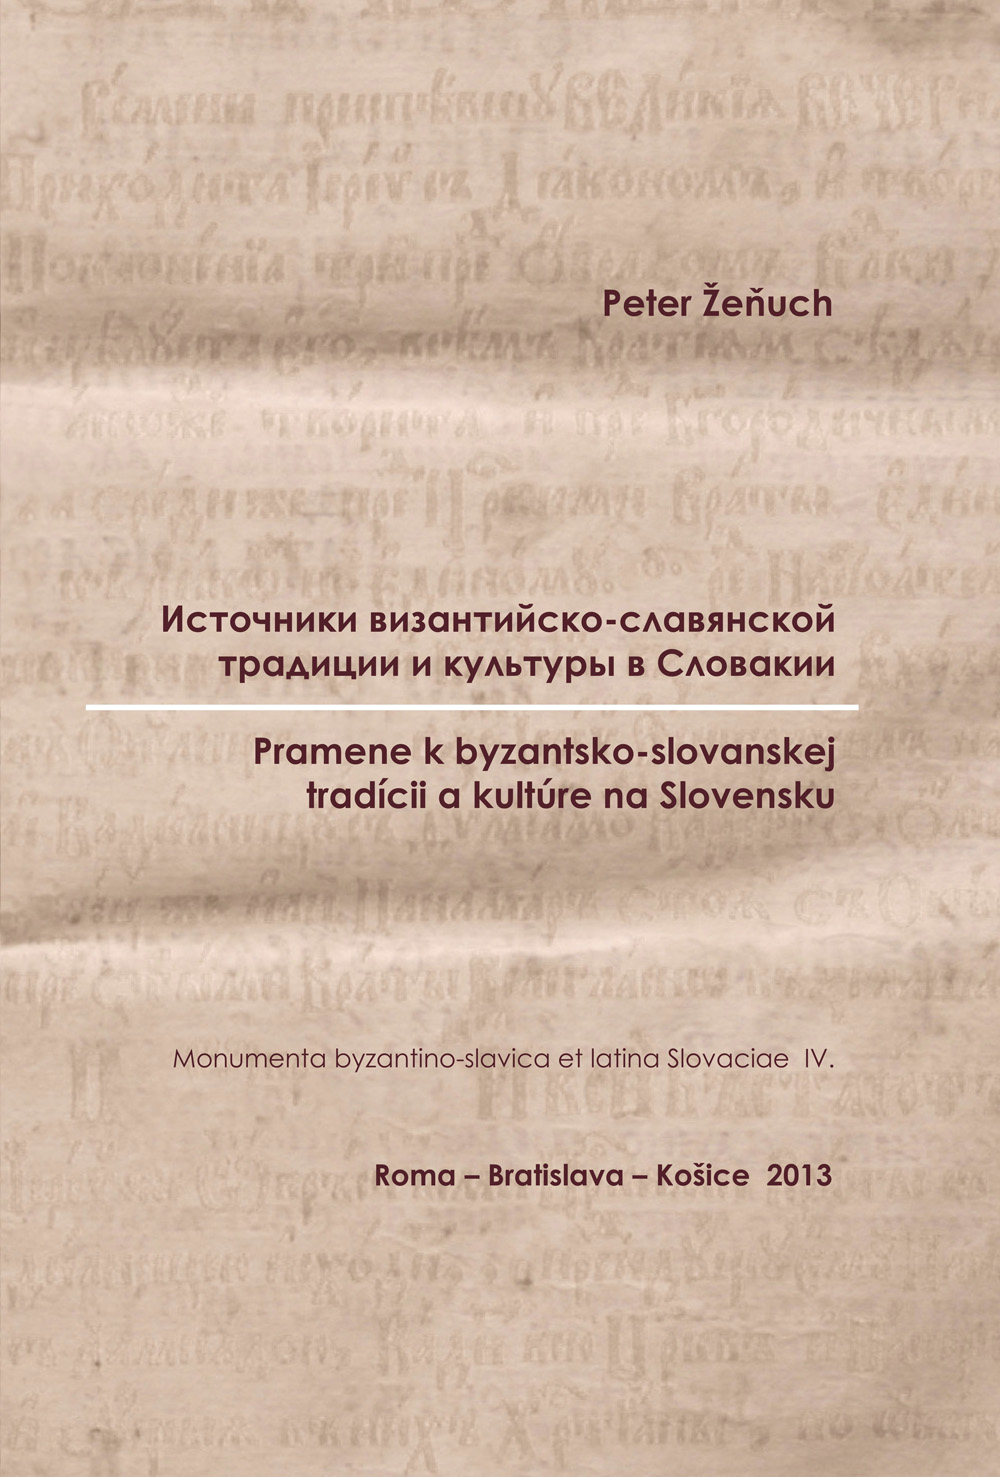 ŽEŇUCH, PETER: Источники византийско-славянской традиции и культуры в Словакии / Pramene k byzantsko